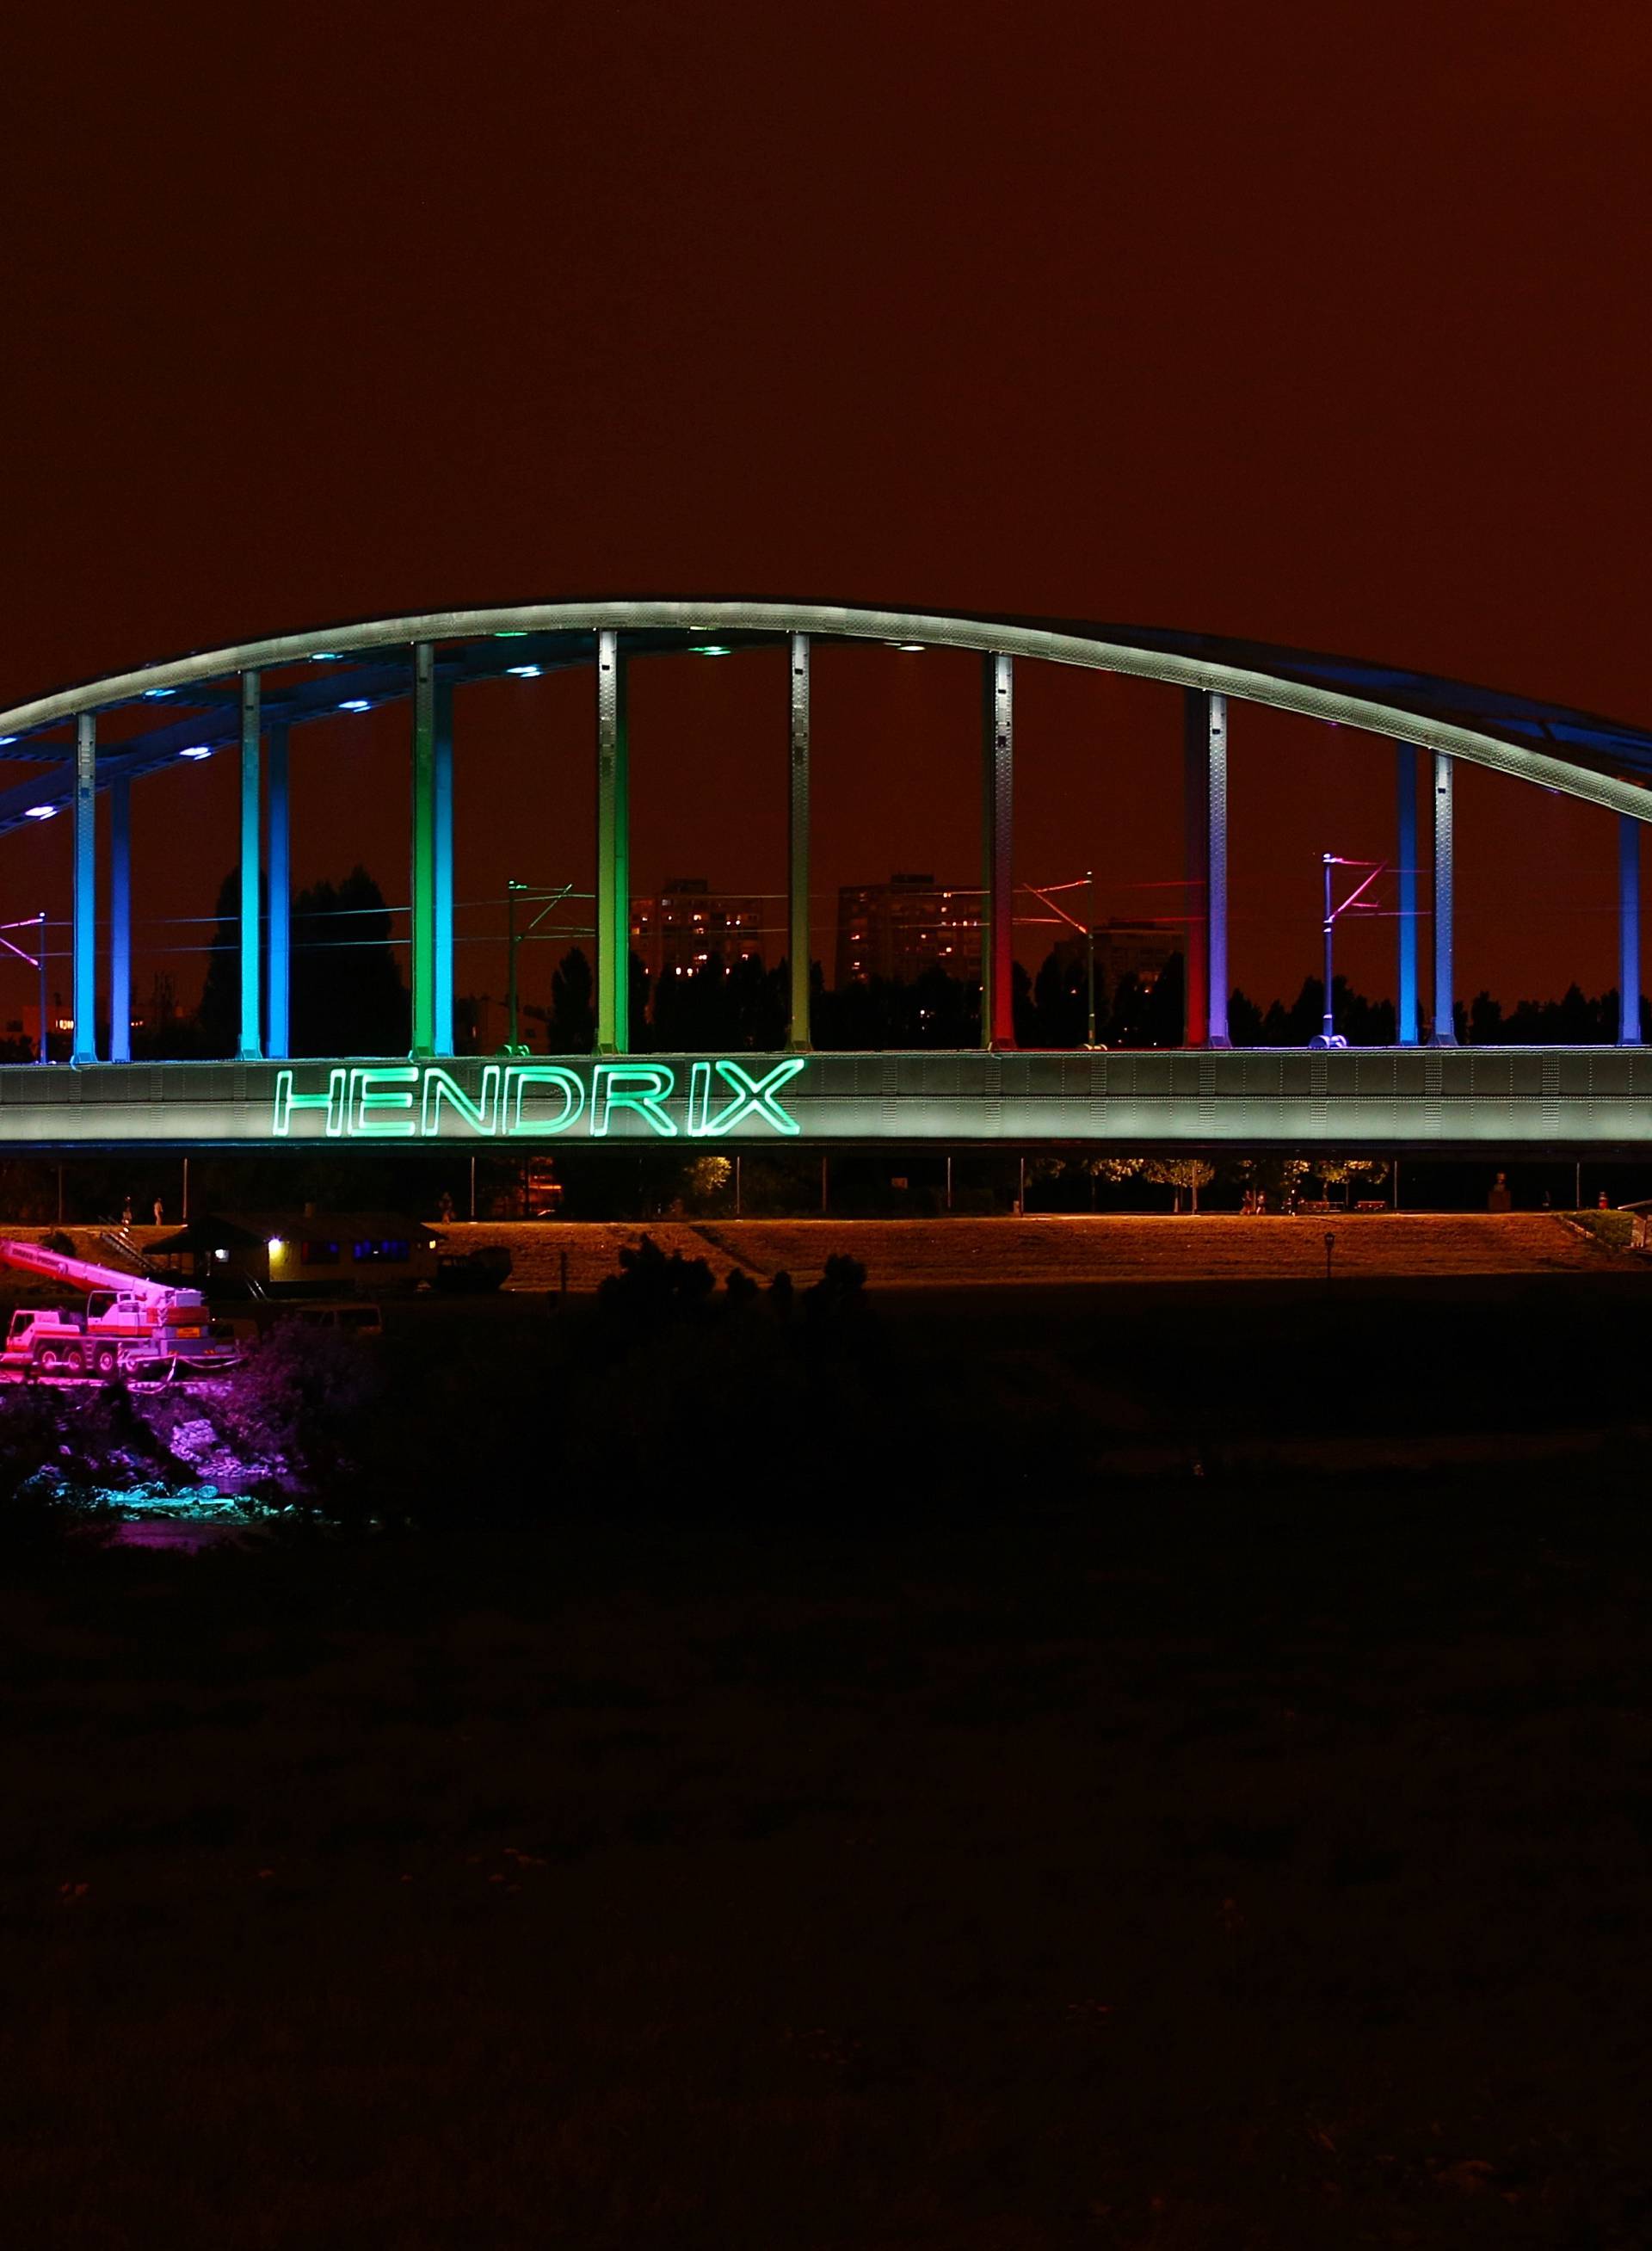 Mile baš voli disko: Hendrixov most sad ima svjetleći natpis!